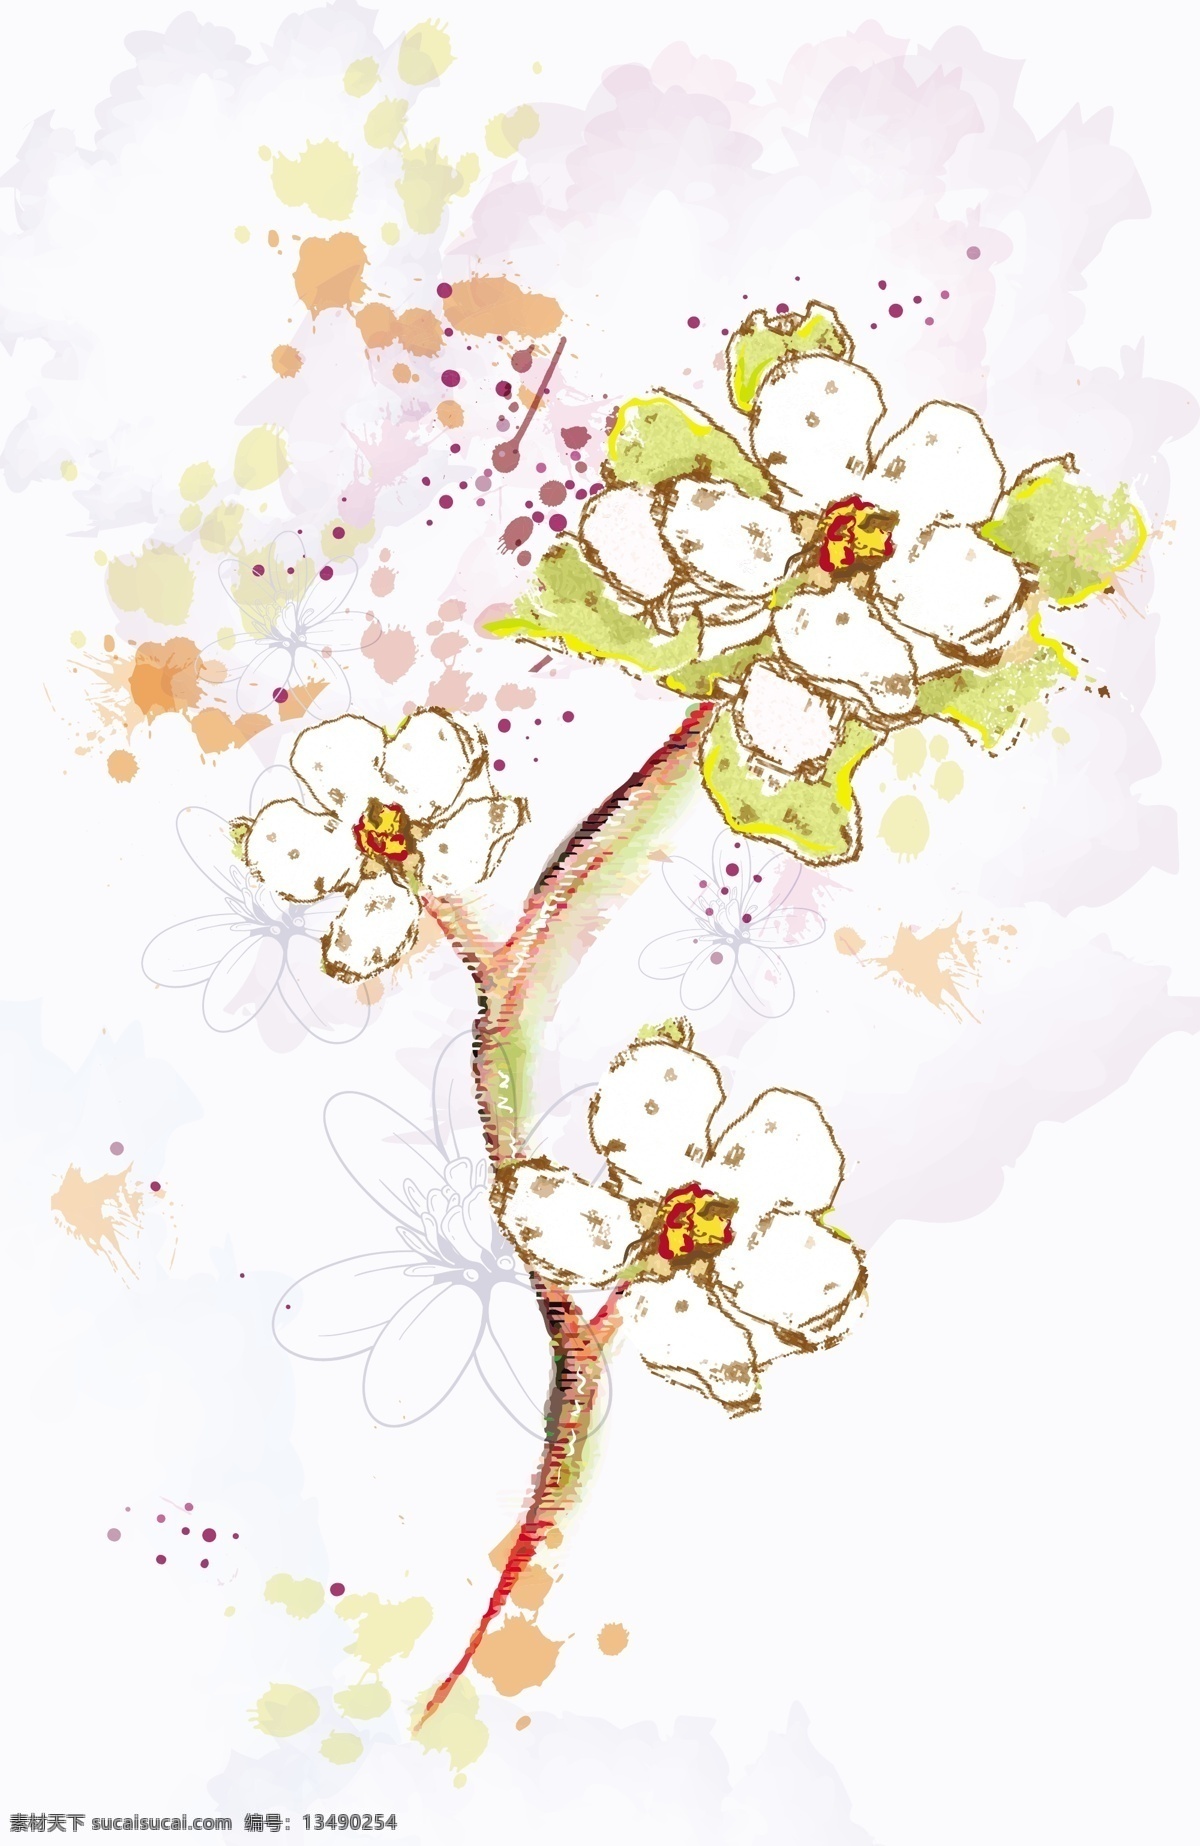 喷溅 图案 水彩 花朵 喷溅图案 花卉 植物 水彩画 水彩花朵 花纹花边 底纹边框 矢量素材 白色